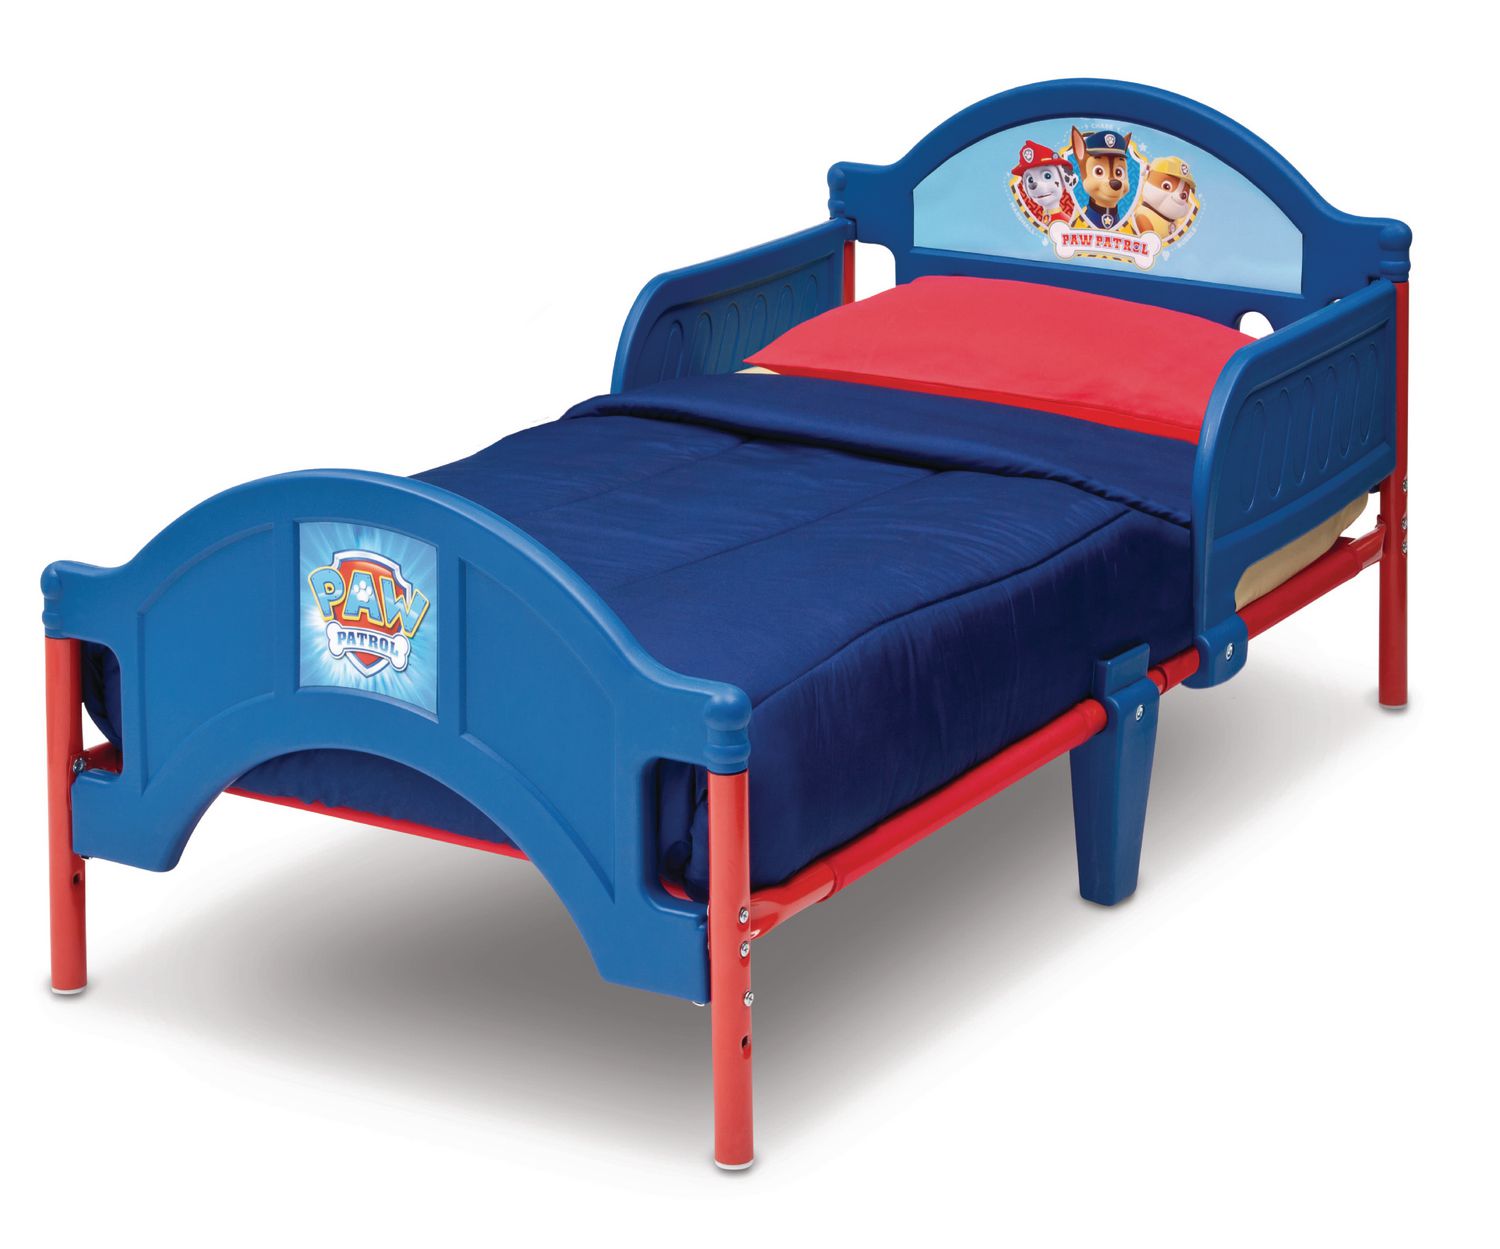 PAW Patrol Toddler Bed by Delta Children | Walmart Canada